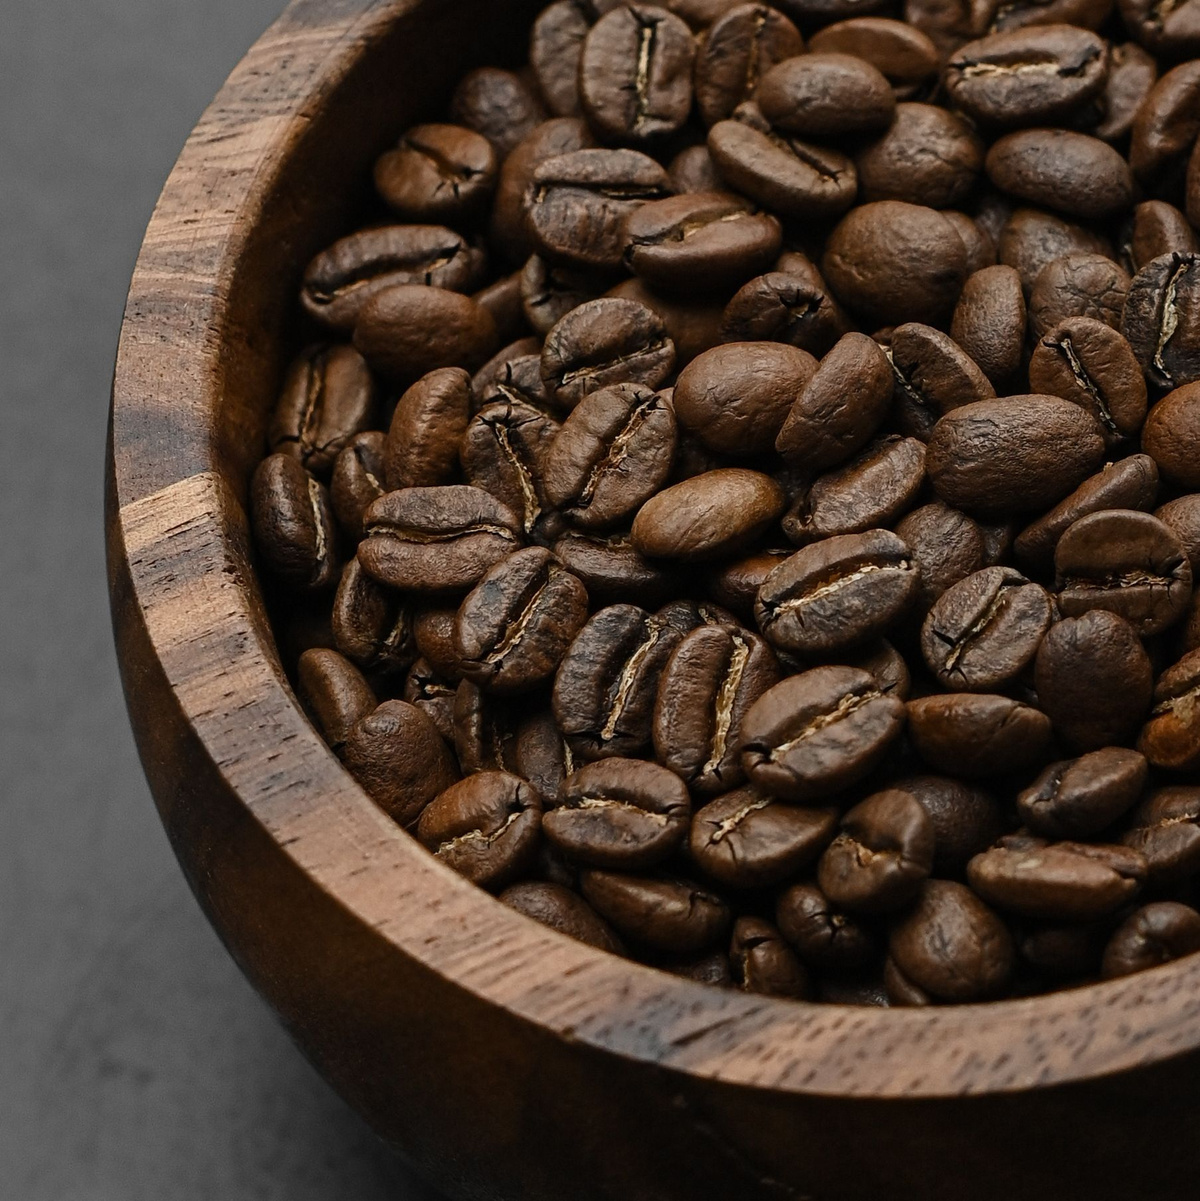 Хотите насладиться поистине непревзойденным вкусом и ароматом кофе? Тогда обратите внимание на наш новый продукт - кофе в зернах Колумбия Супремо Bailyday. Это кофе, который покорит ваше сердце и превзойдет все ваши ожидания.  Наш зерновой кофе производится из 100% арабики, что делает его по-настоящему натуральным и высококачественным. Мы бережно отбираем только самые лучшие зерна, чтобы каждая чашка кофе приносила вам настоящее удовольствие.  Особенностью нашего кофе в зернах Колумбия Супремо является его неповторимый вкус с нотками красного яблока, ягод, карамели и грейпфрута. Кислотность, сладость и горечь средней интенсивности дают безупречный баланс, который поразит вас с первого глотка  Кофе в зернах Колумбия Супремо Bailyday идеально подходит для приготовления эспрессо. Обжарка зерен проводится специально под эспрессо, что позволяет сохранить все вкусовые качества и ароматы. Вы сможете насладиться богатым вкусом и тонким ароматом каждой чашки кофе.  Колумбия Супремо – это прекрасный кофе для кофемашины. Он также идеально подойдет для приготовления кофе в турке, гейзерной кофеварке или френч прессе. Благодаря своей плотности и качеству зерен, он обеспечит вам настоящий кофейный ритуал и удовлетворит самых требовательных гурманов.  Зерновой кофе Колумбия Супремо Bailyday доступен в упаковке весом 250 грамм. Это идеальный вариант для тех, кто хочет попробовать наш кофе и оценить его качество. Плотная упаковка с зип-локом и клапаном дегазации сохранит все вкусовые качества и ароматы на долгое время.  Не упустите возможность попробовать настоящий кофе высшего качества. Закажите Кофе в зернах Колумбия Супремо Bailyday прямо сейчас и насладитесь неповторимым вкусом и ароматом. Позвольте себе настоящий кофейный ритуал с нашим натуральным и качественным кофе в зернах.  Обработка зерна: мытая. Оценка Q/SCA 84  Регион: восточный Кальдас  Разновидность: кастильо, катурра  Высота произрастания: 1650-1800 м Условия хранения После вскрытия упаковки ограничить контакт продукта с воздухом во избежание потери вкусовых качеств.  Состав Натуральный кофе 100%.